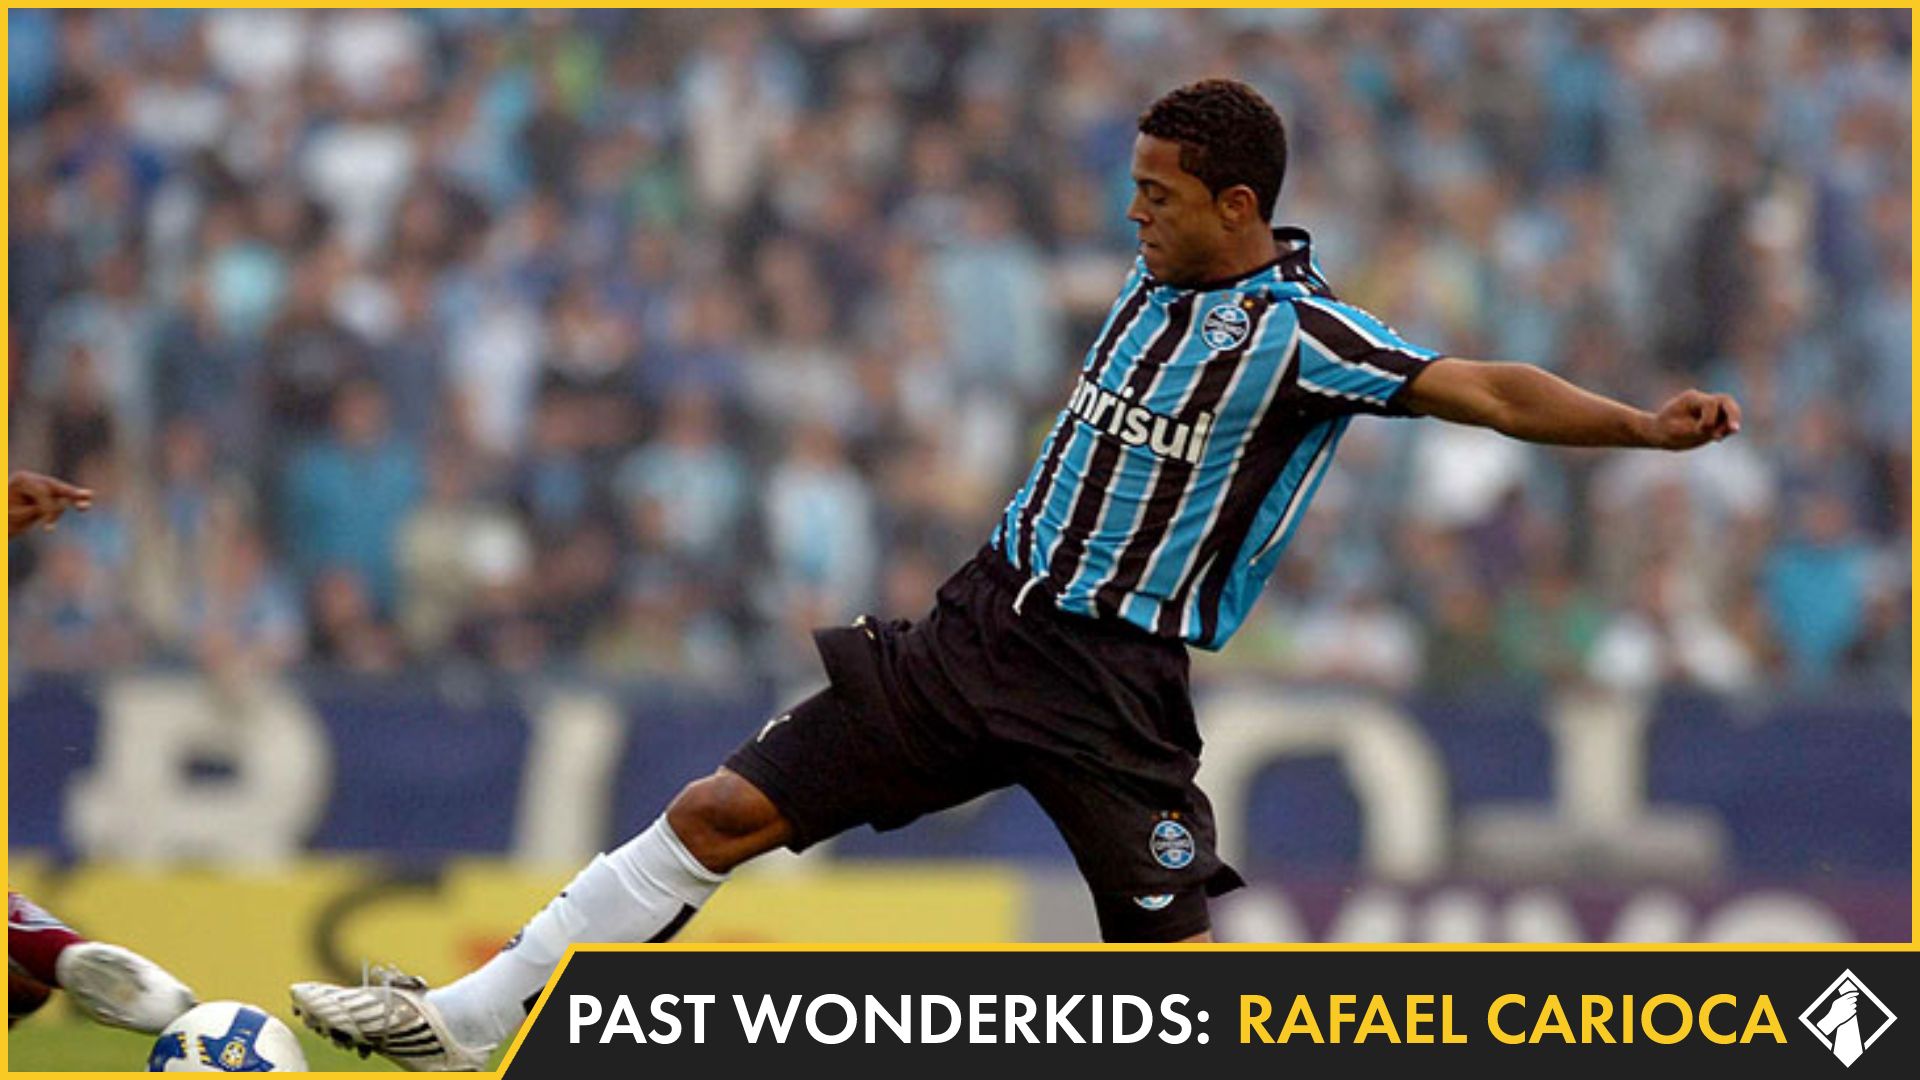 Whatever happened to Rafael Carioca?